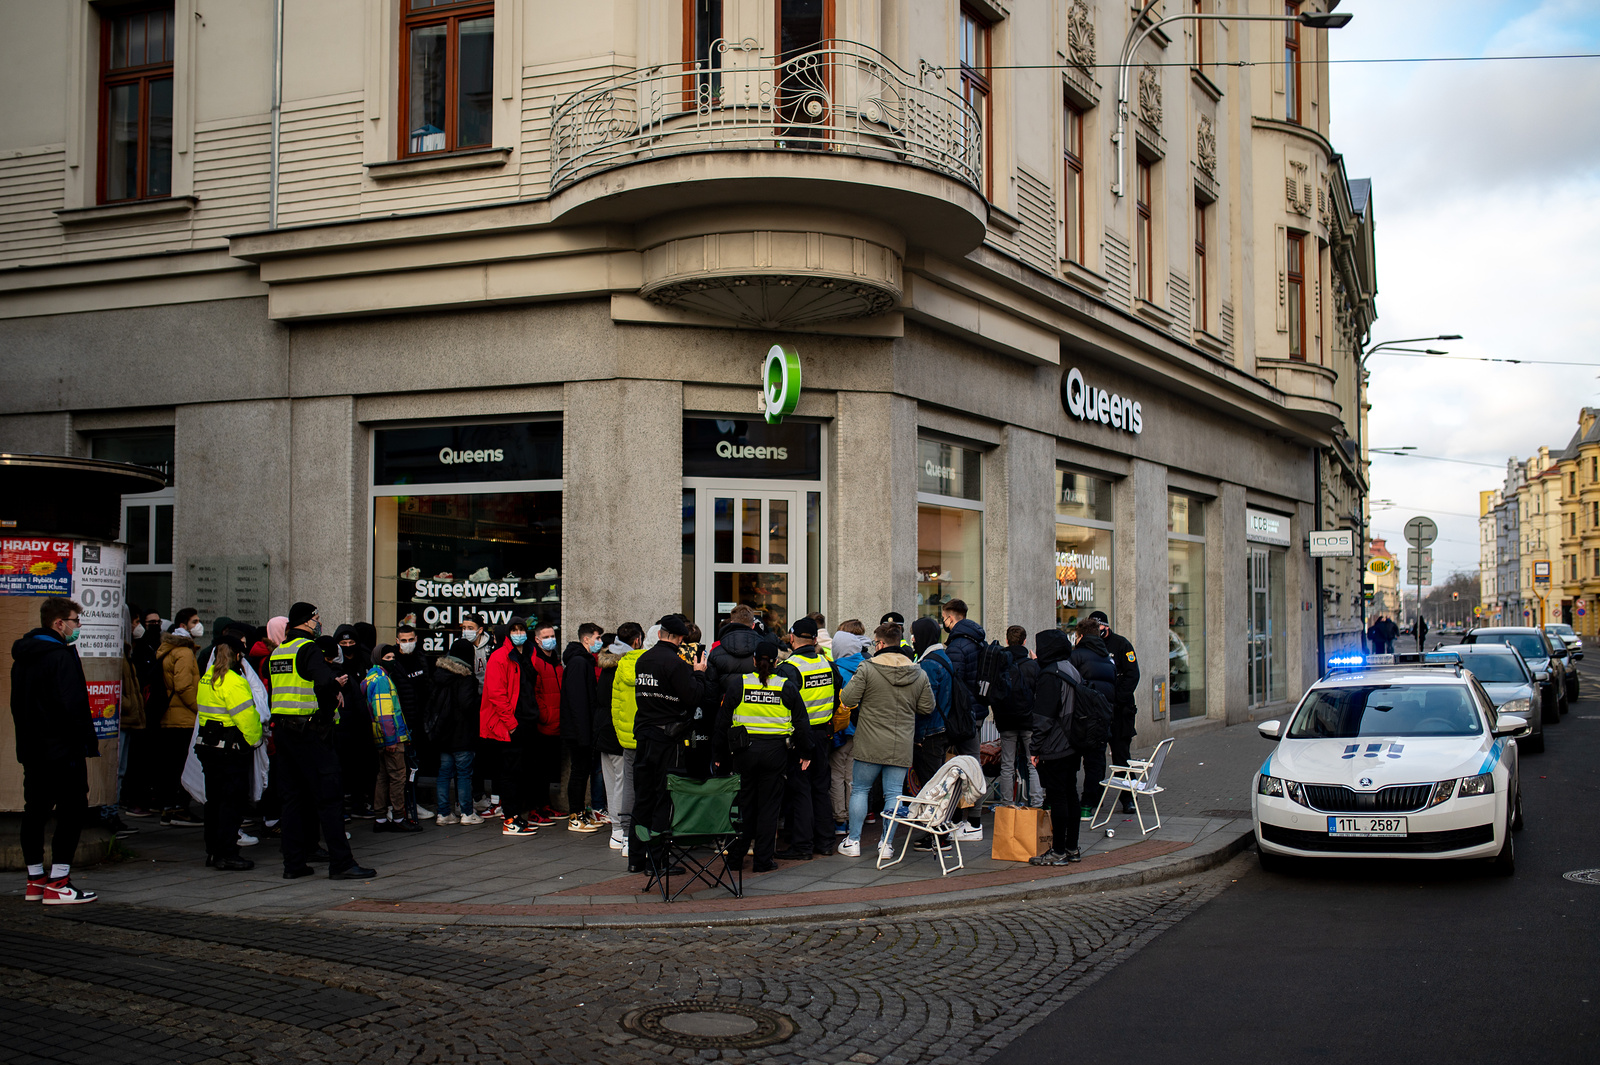 Šílenství v Ostravě kvůli limitované edici. Lidé čekali na boty přes noc -  Bruntálský a krnovský deník